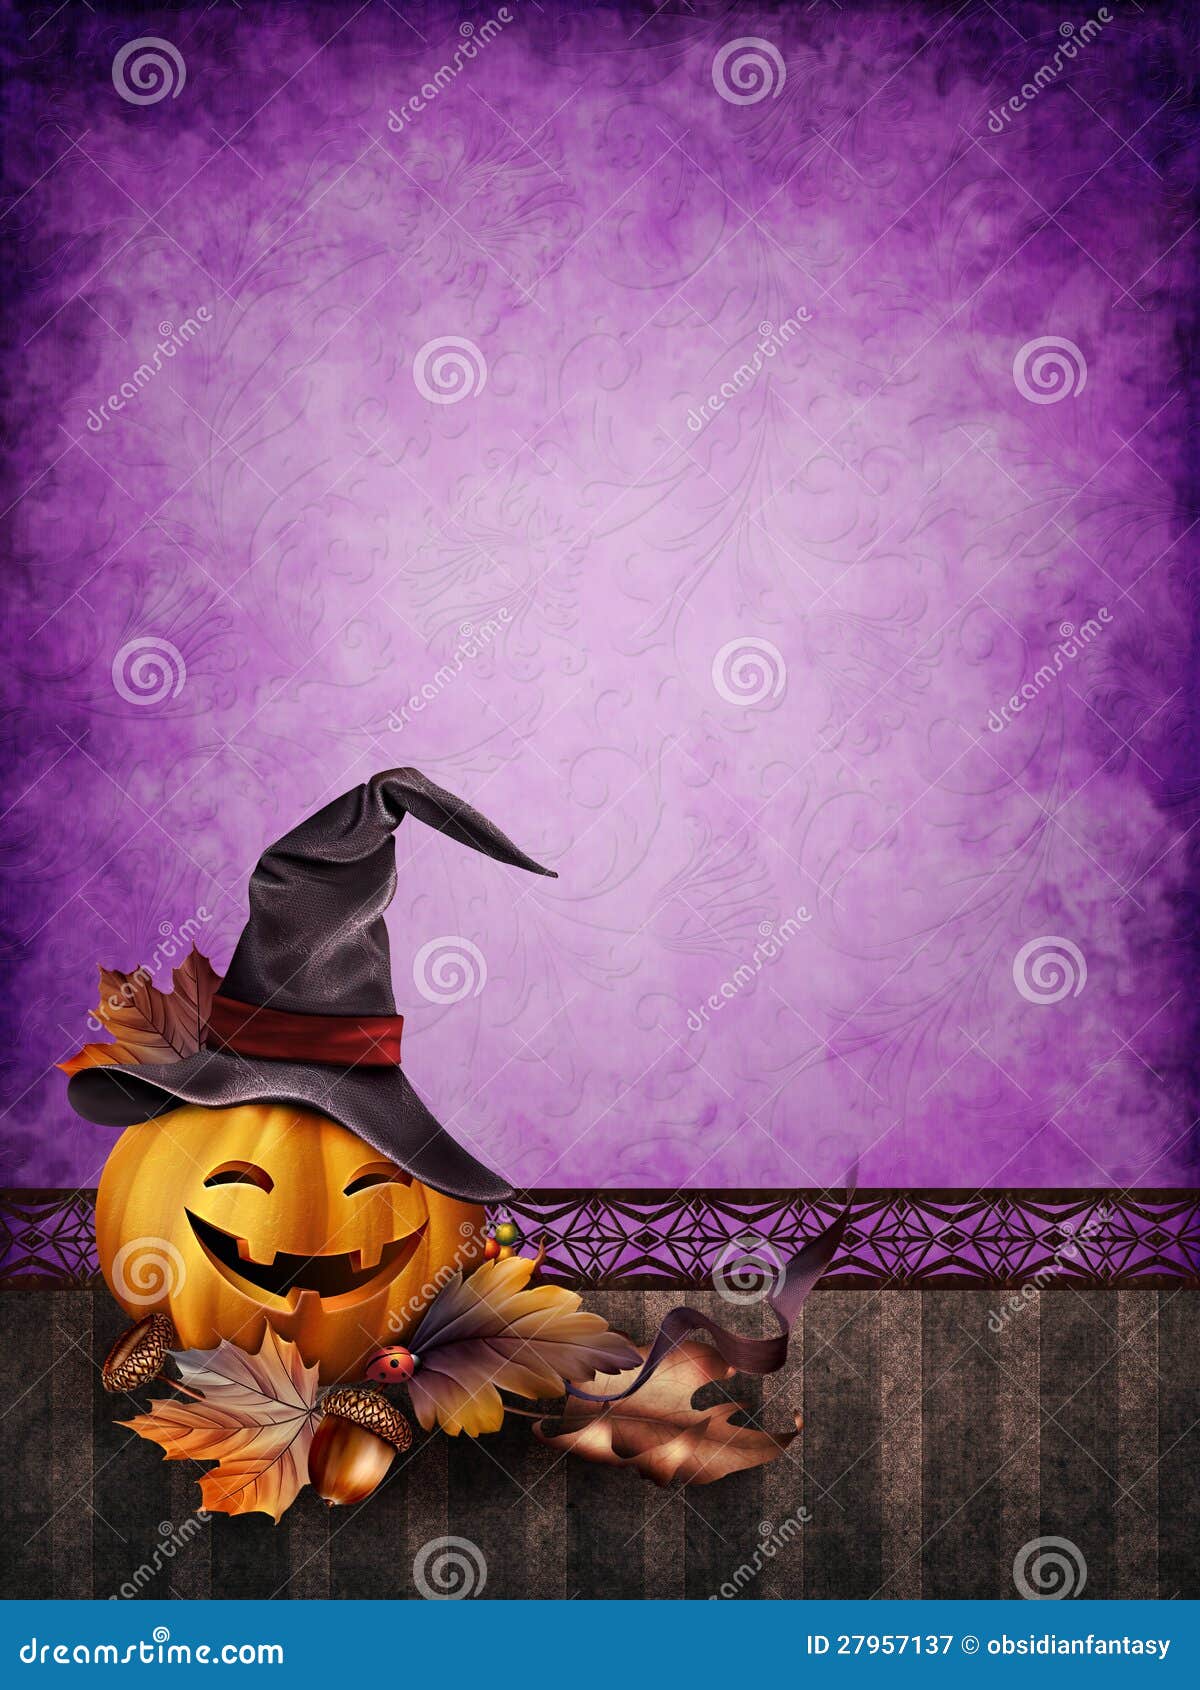 Màn hình Halloween sẽ đưa bạn vào không gian rùng rợn, đầy màu sắc và lạnh lẽo của ngày lễ Halloween. Hãy chào đón và cảm nhận không khí đêm Halloween tại màn hình này.